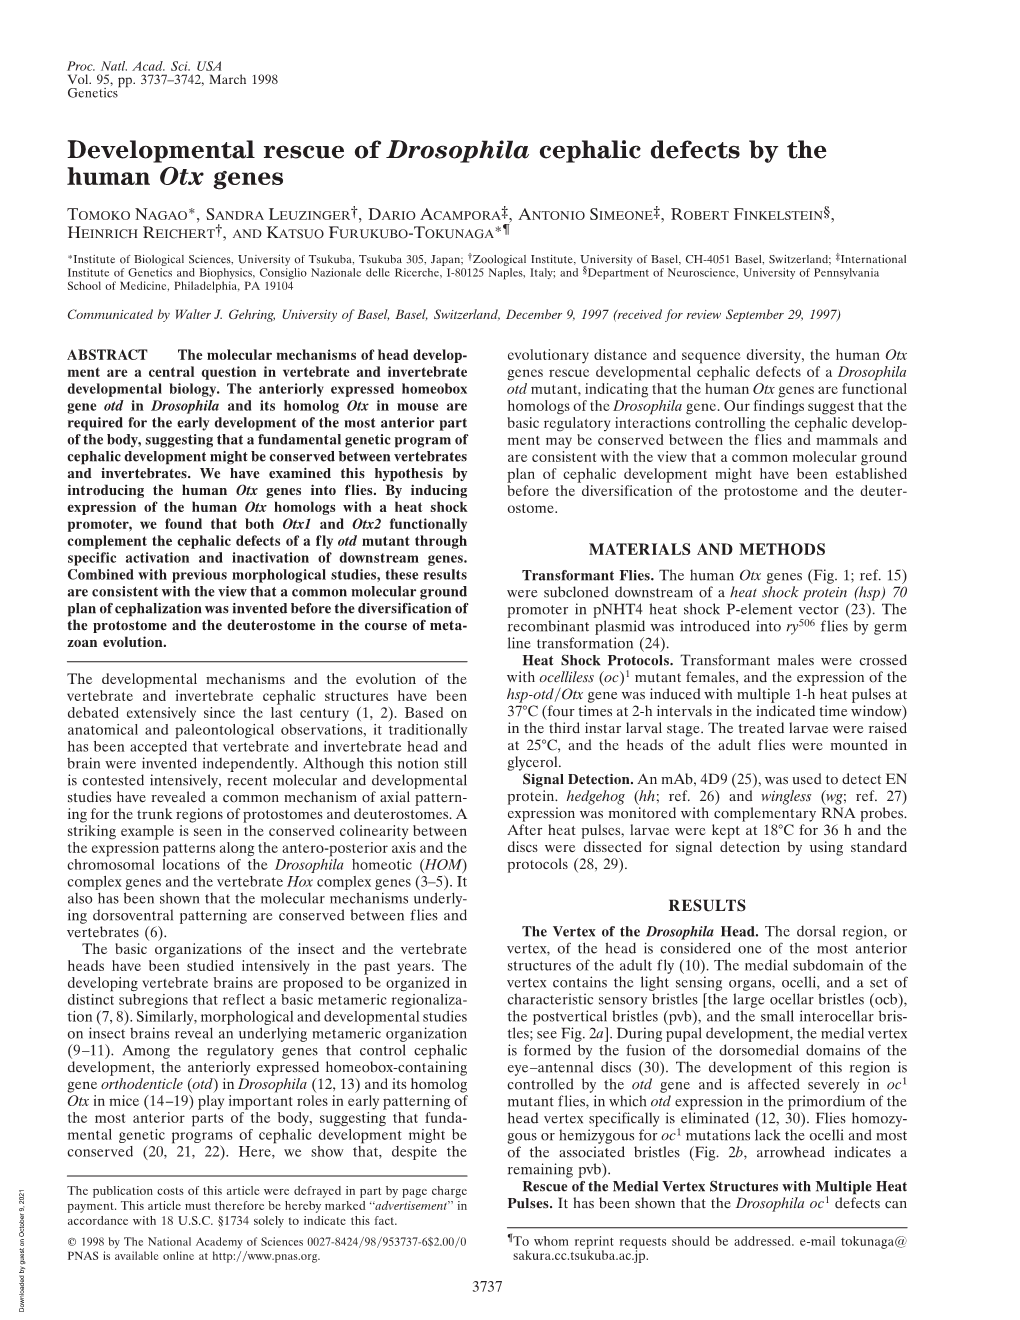 Developmental Rescue of Drosophila Cephalic Defects by the Human Otx Genes